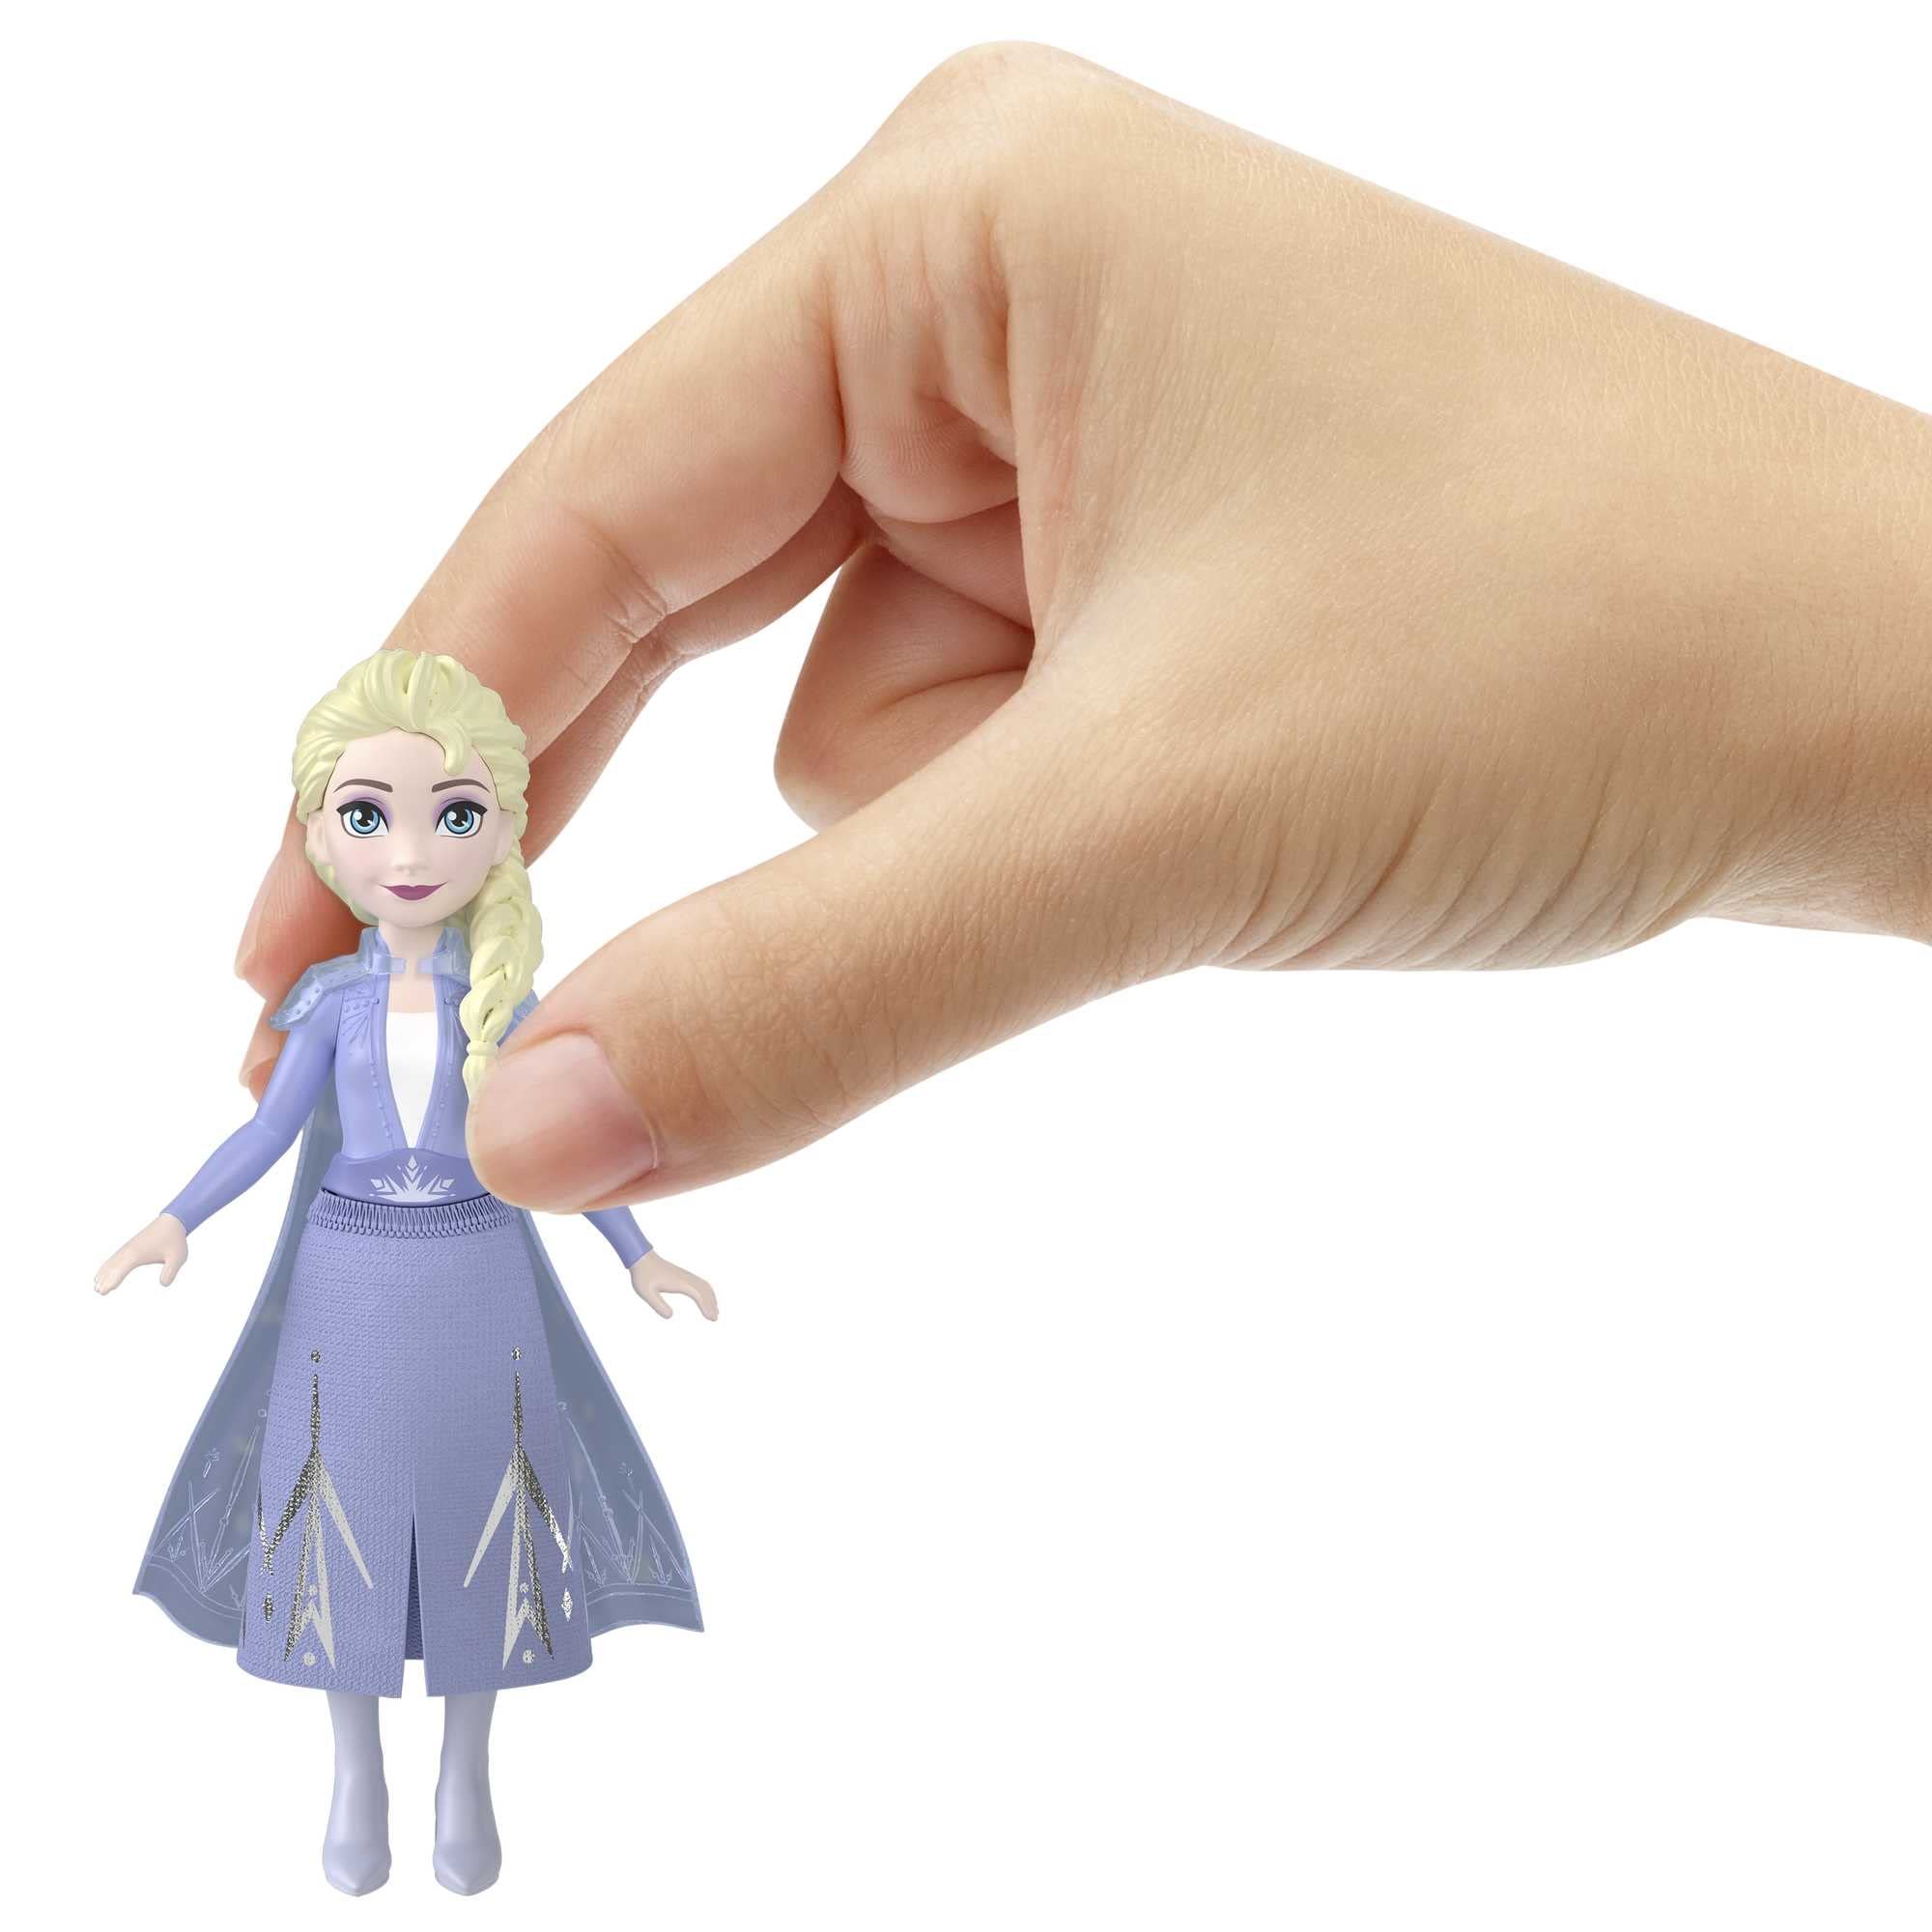 Elsa Disney Frozen Figure